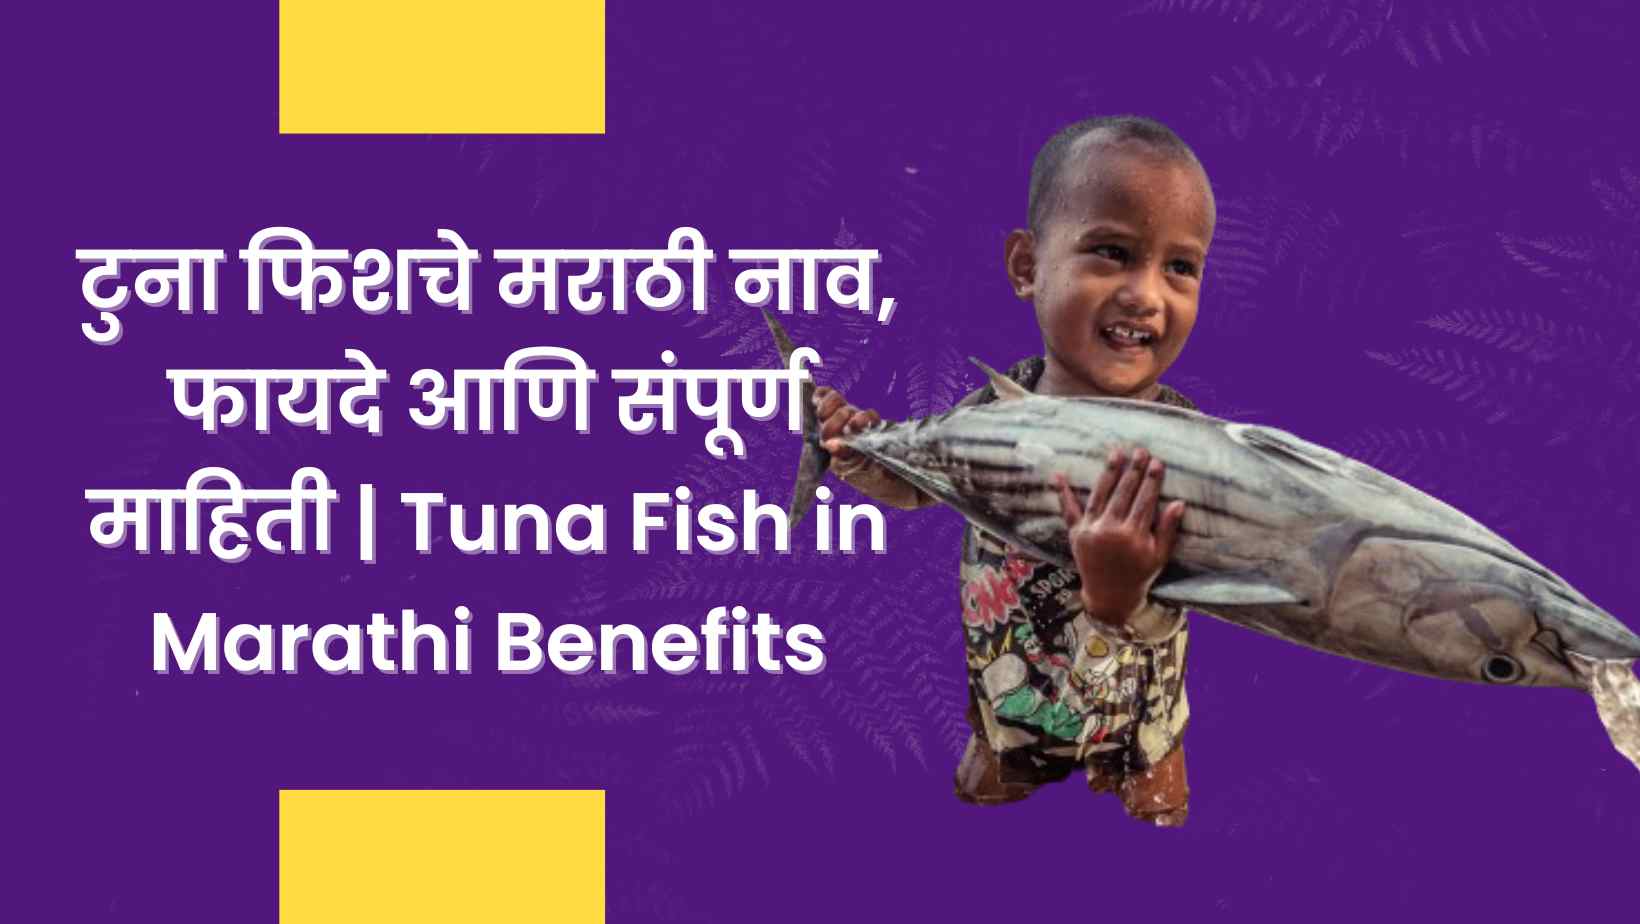 टुना फिशचे मराठी नाव, फायदे आणि संपूर्ण माहिती Tuna Fish in Marathi Benefits